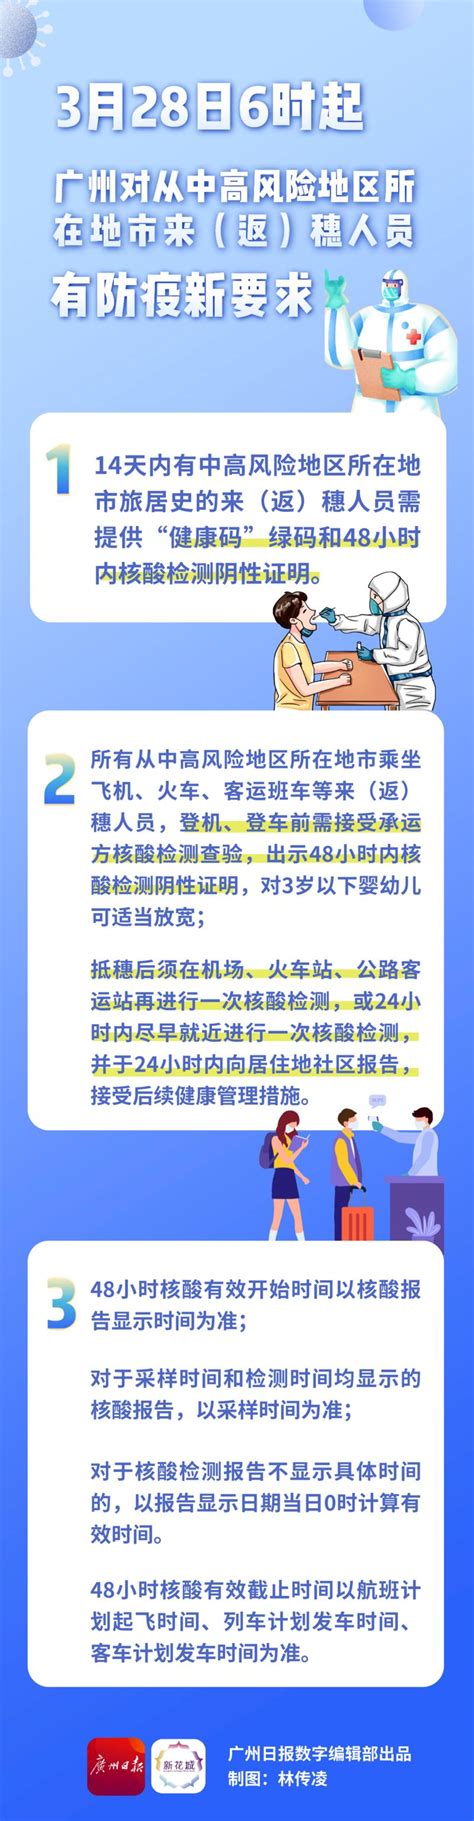 管控区域“无疫社区”可有条件申请解封！速读广州防疫最新进展-荔枝网